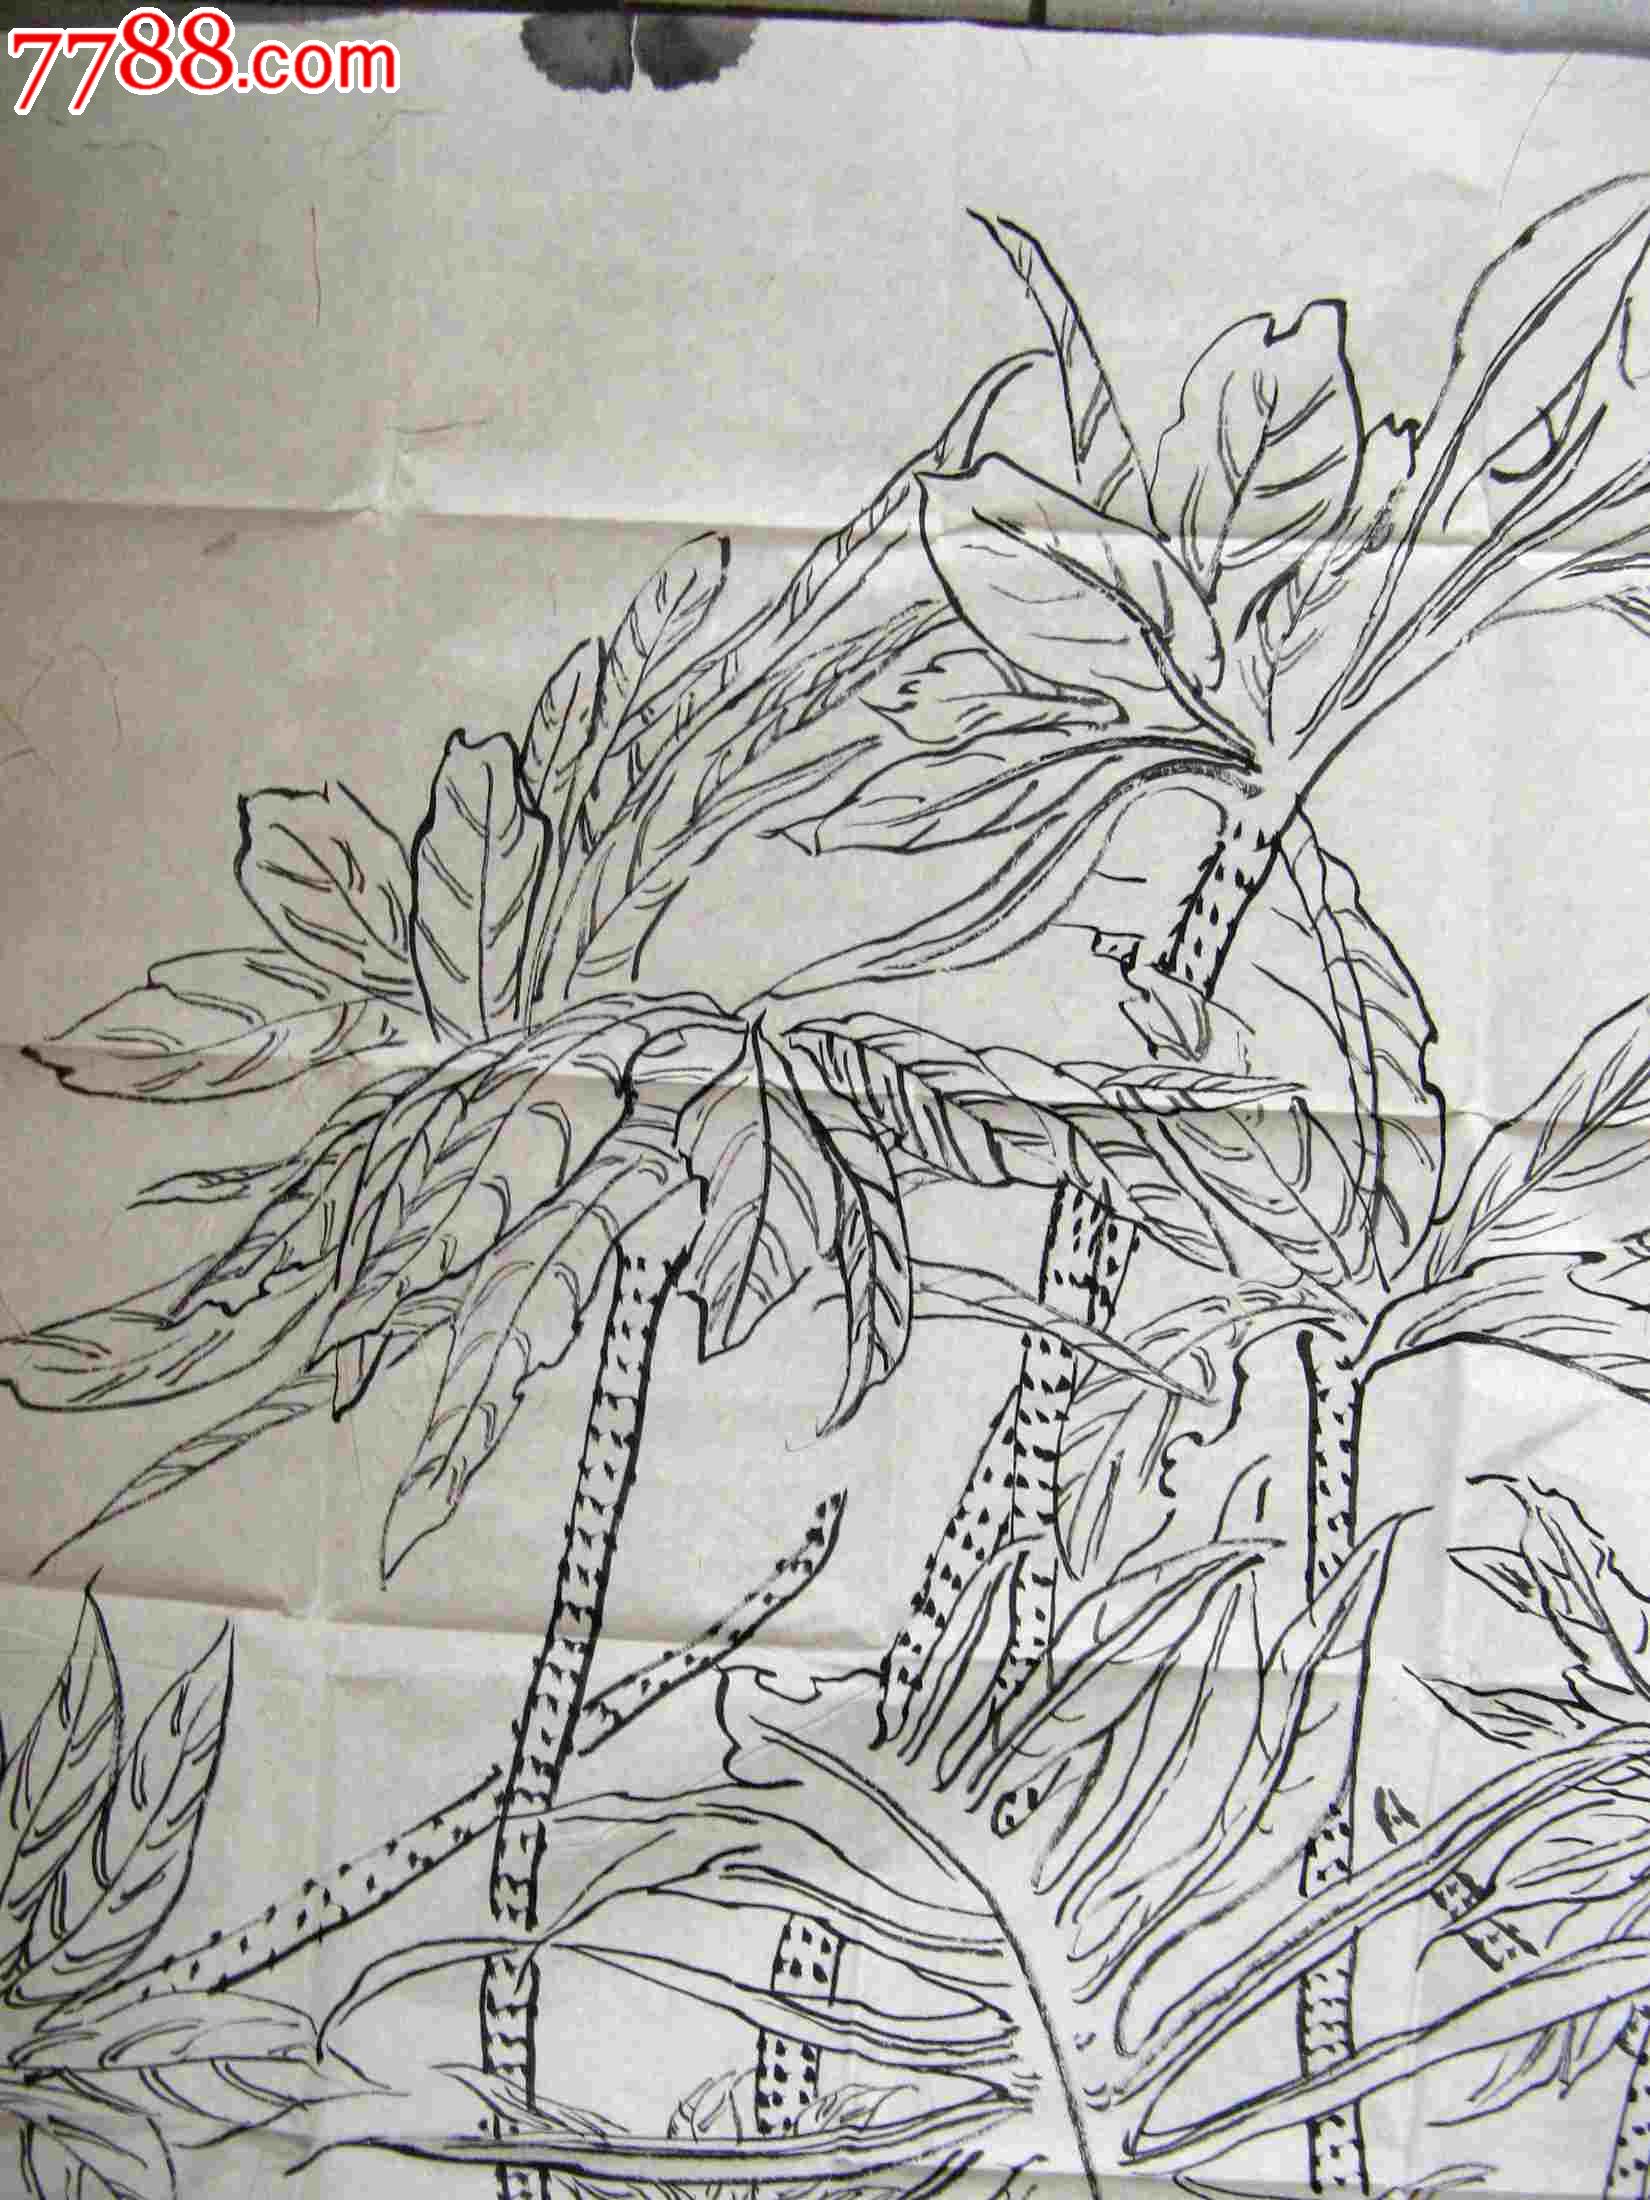 精炼形象的四尺条幅无款植物画:西双版纳蕨类